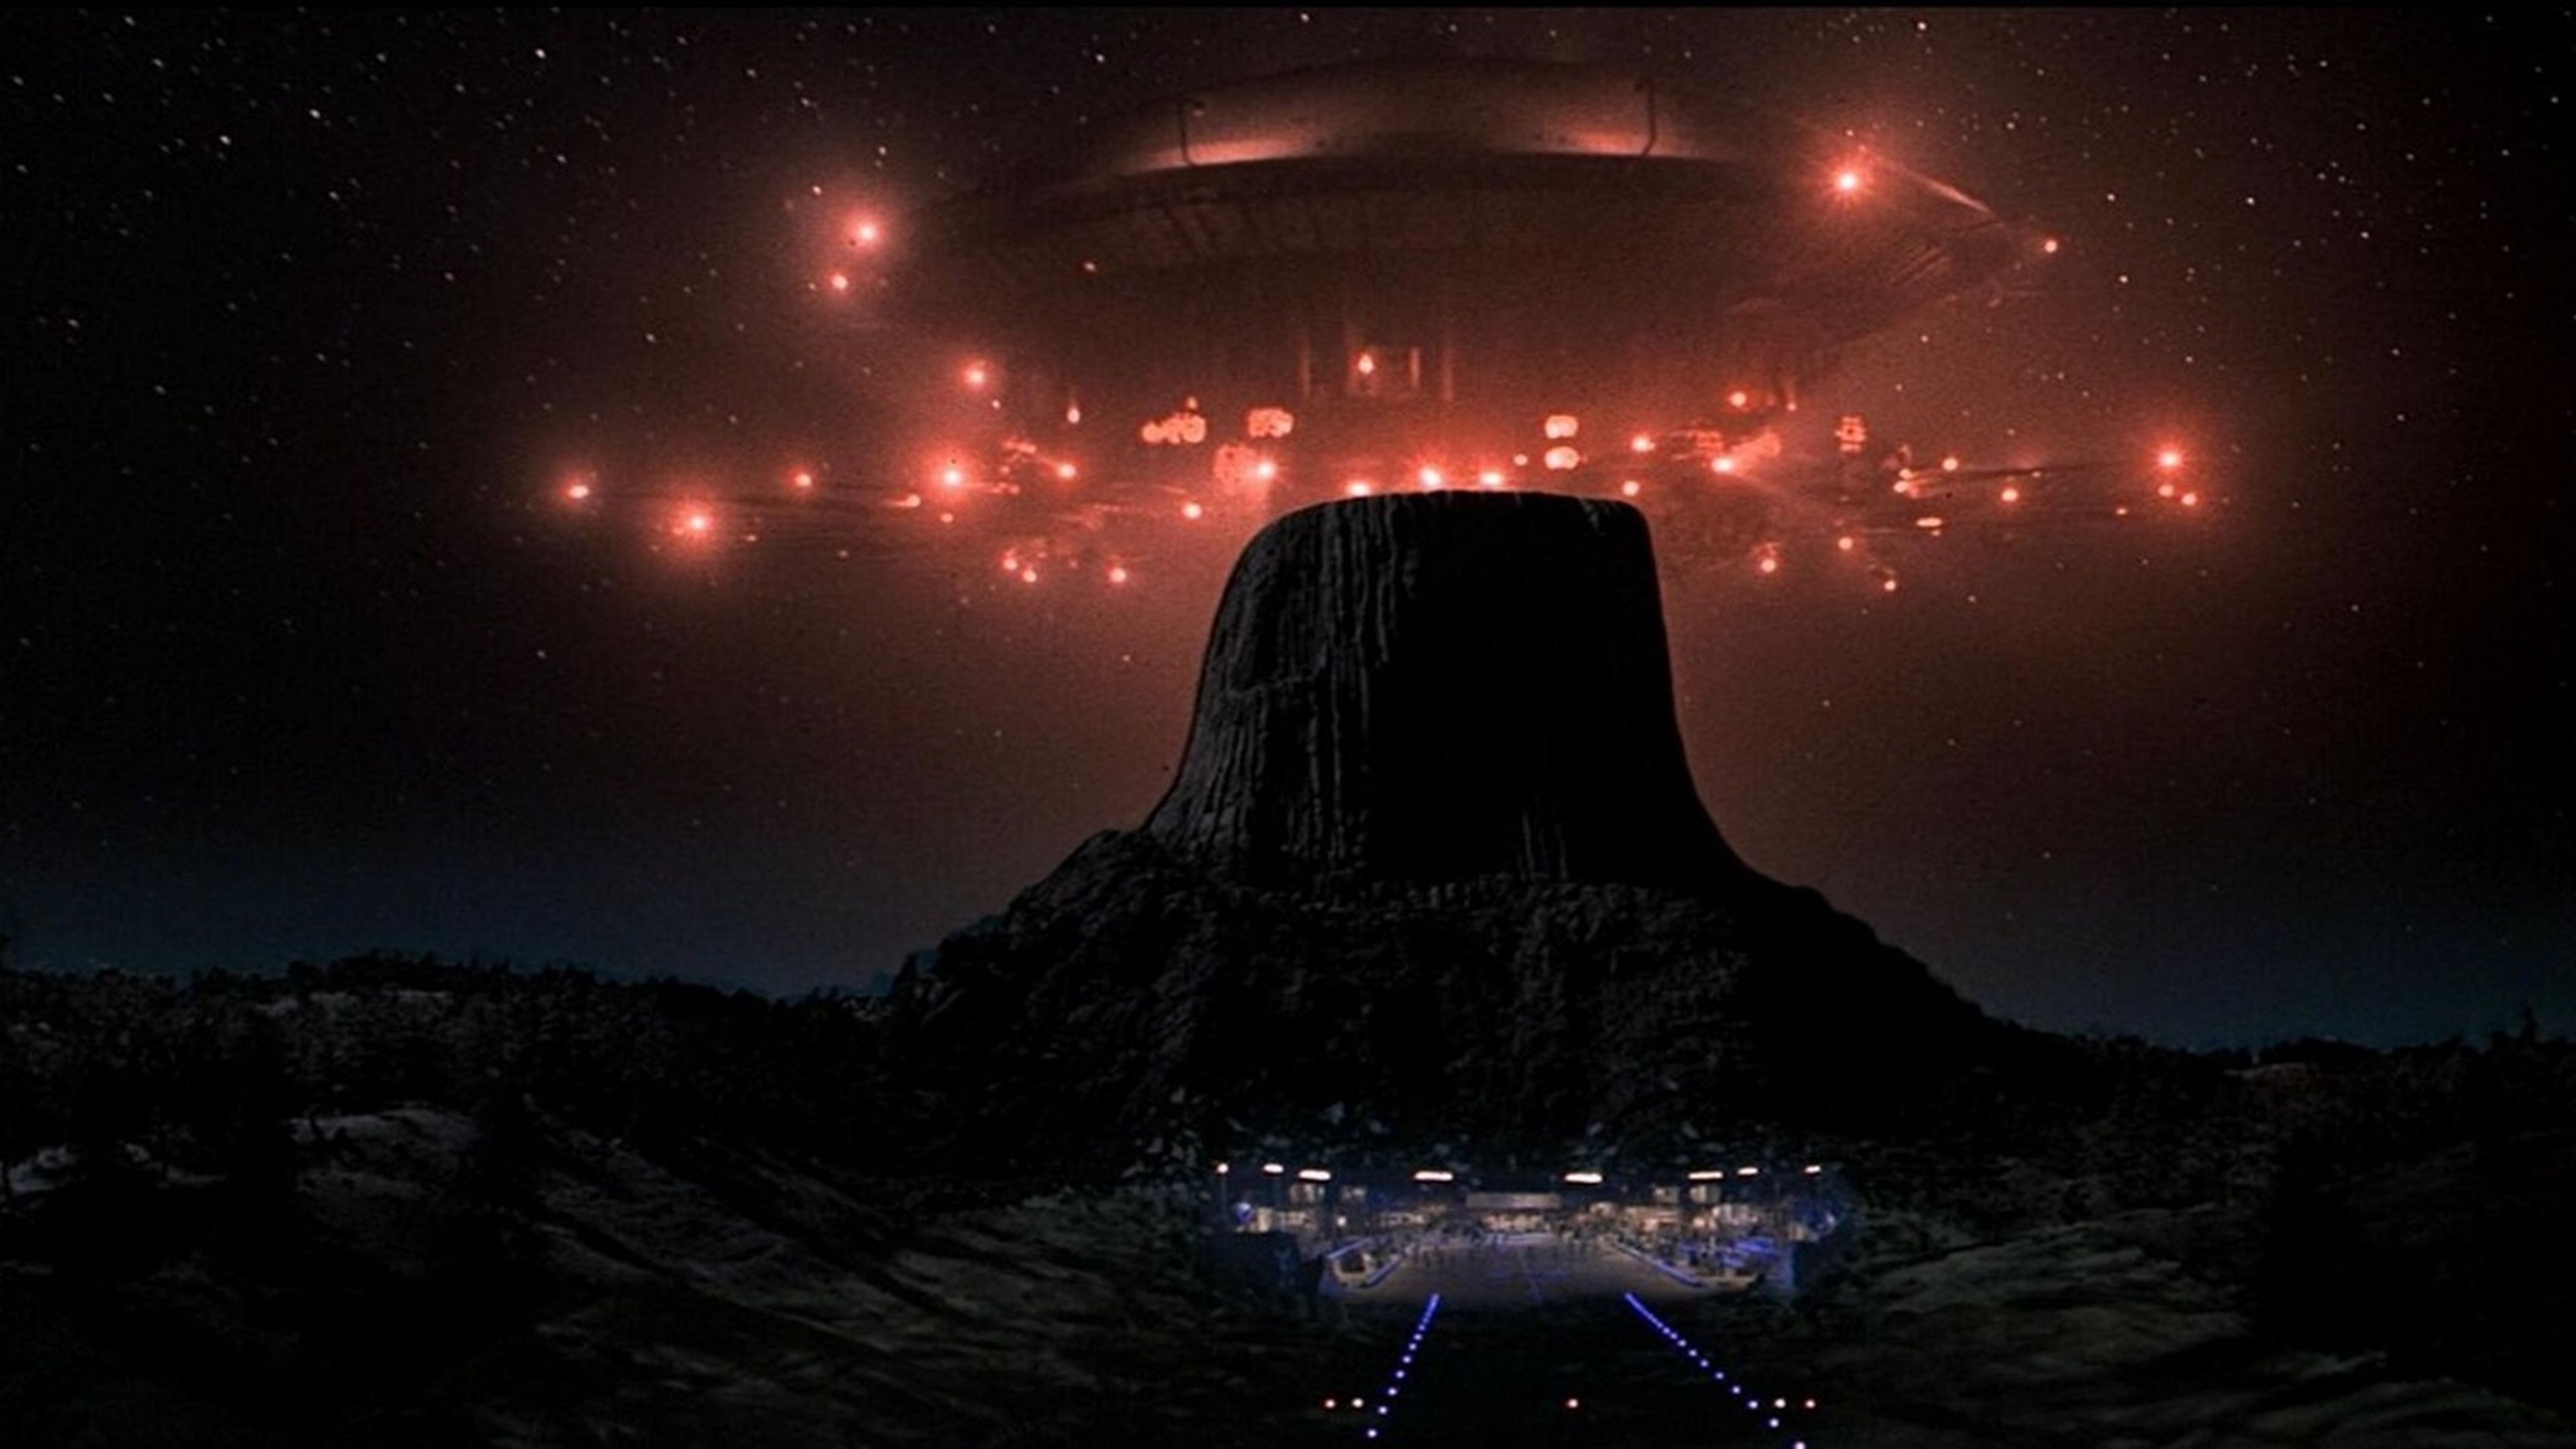 Steven Spielberg dice que "no estamos solos en el universo", y opina sobre los recientes avistamientos OVNI